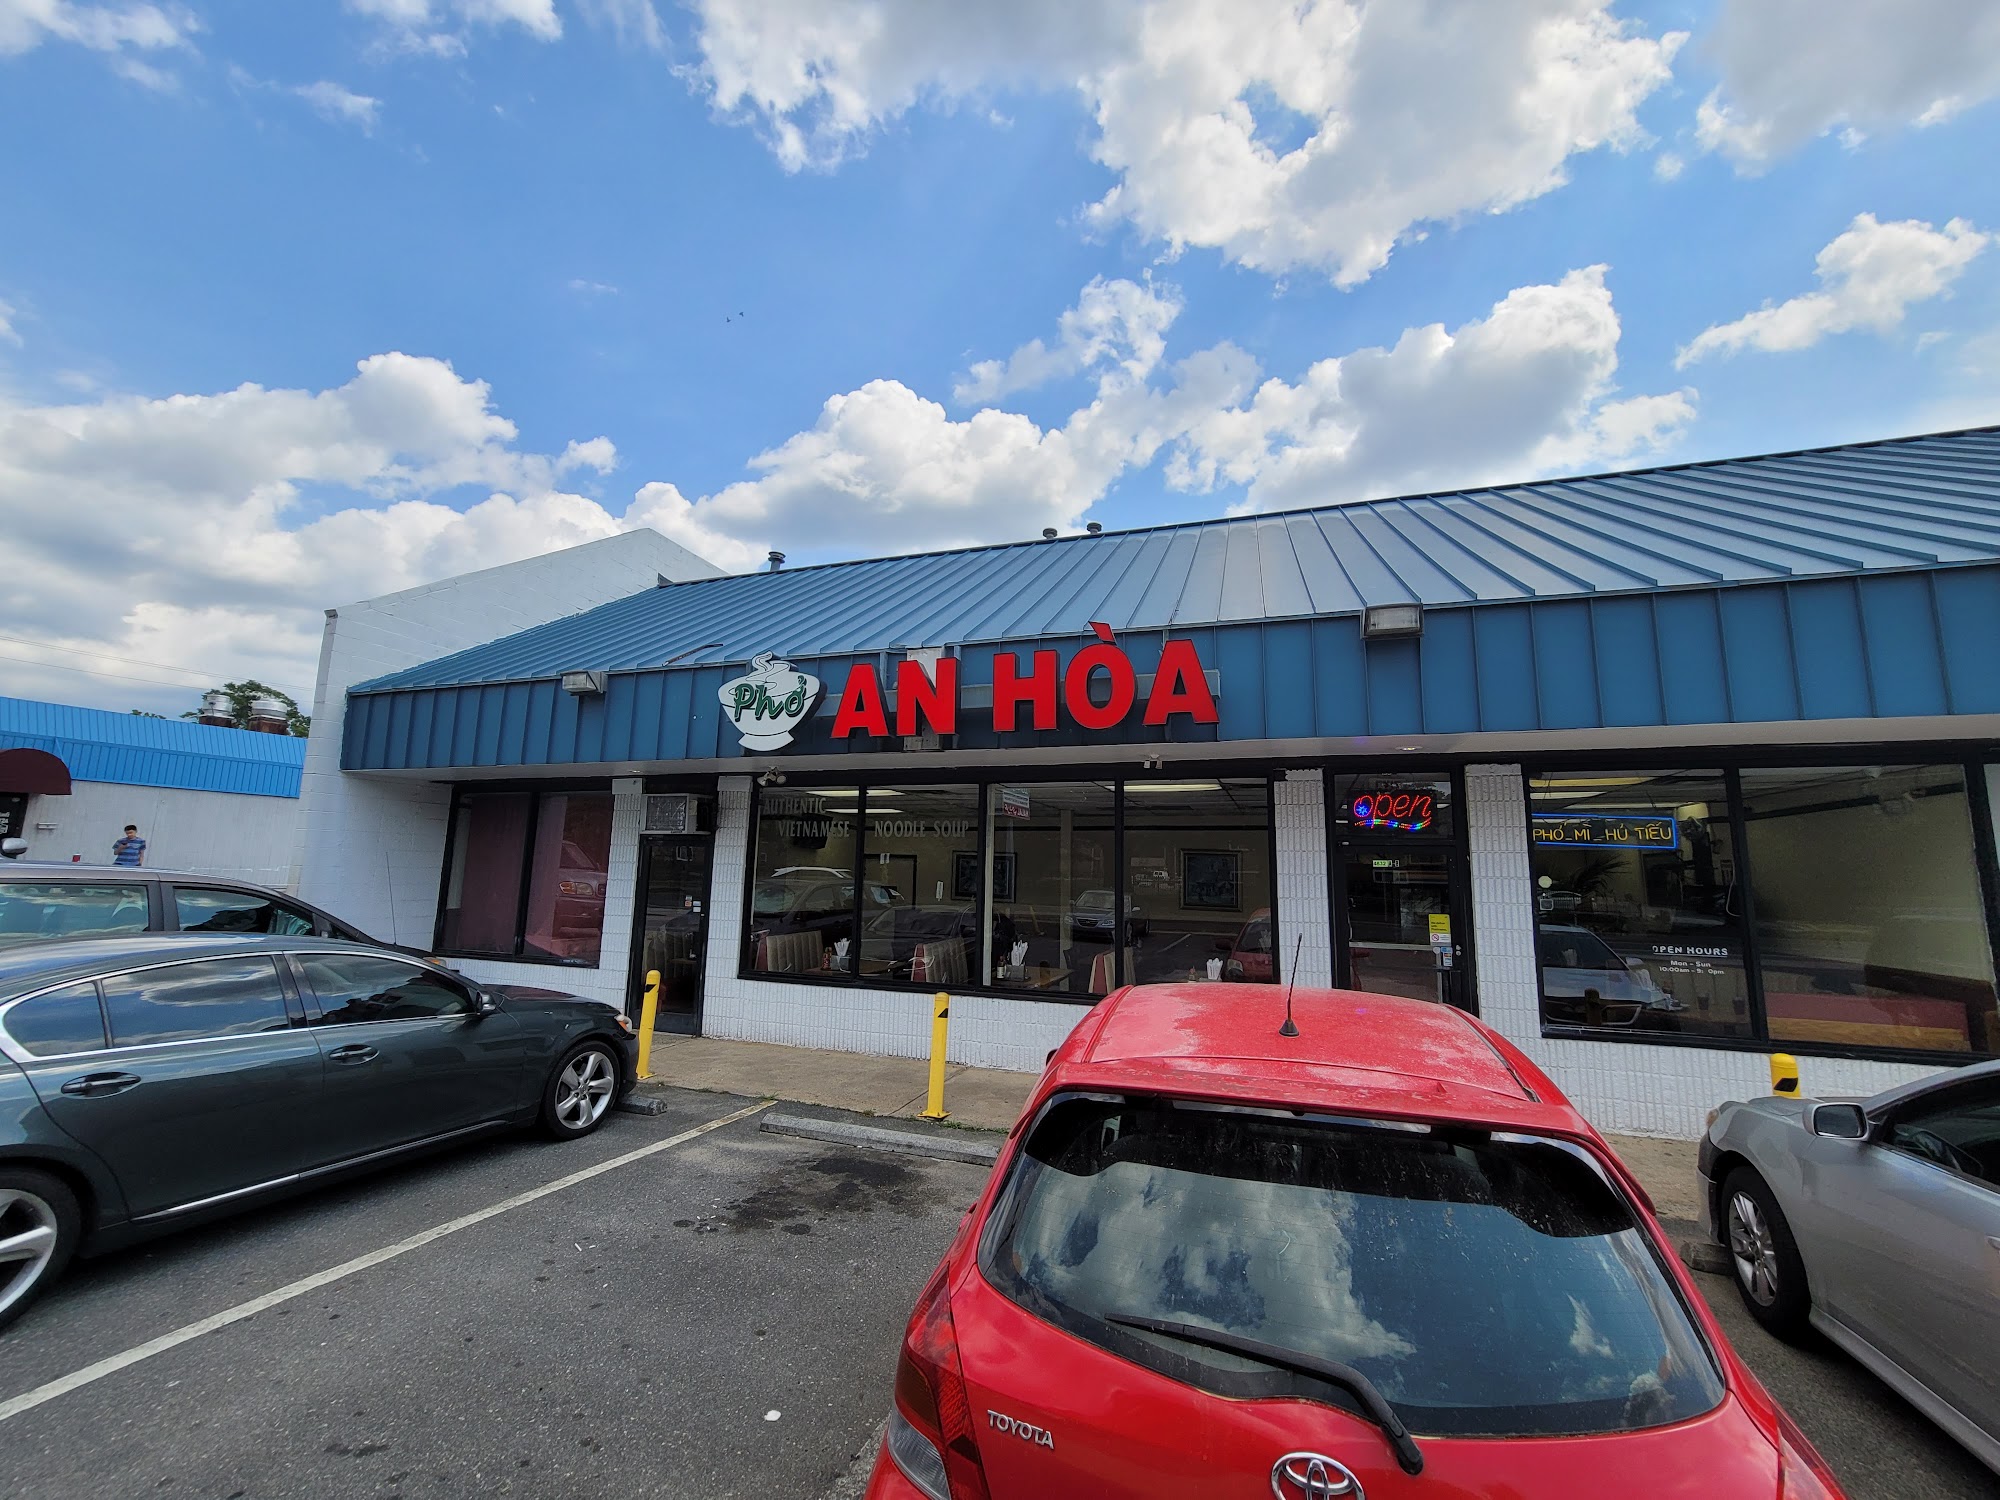 Pho An Hoa Restaurant